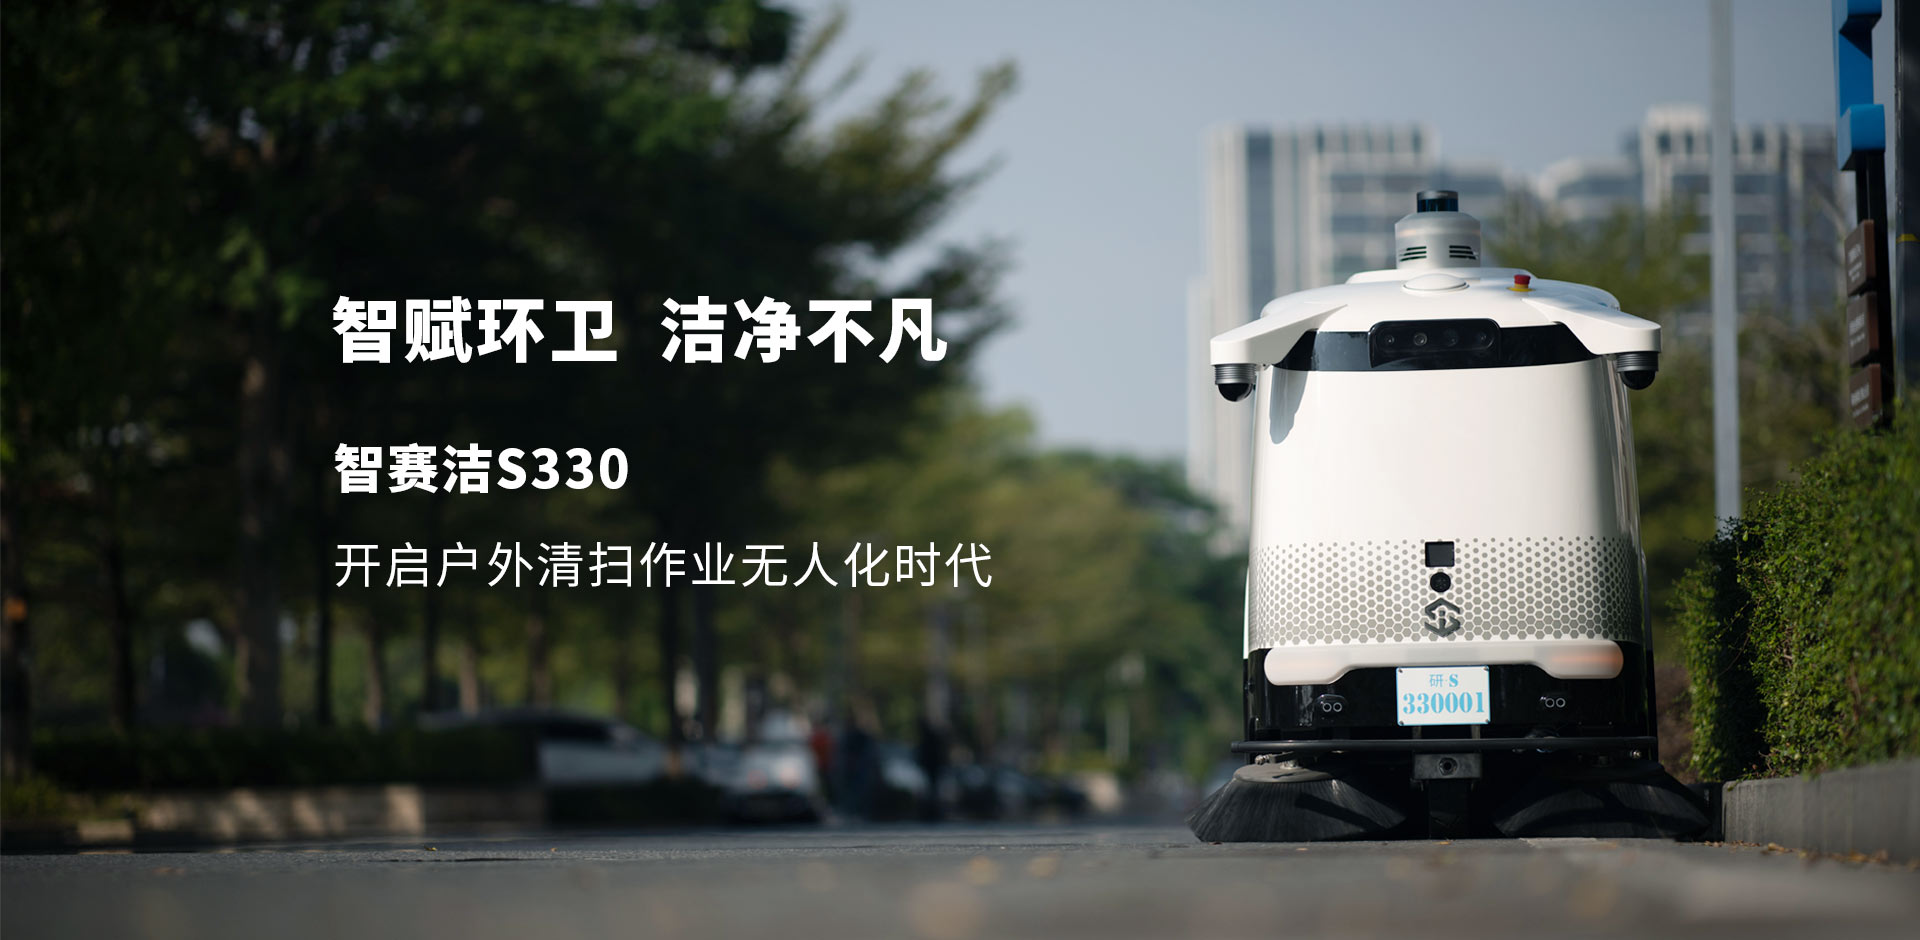 S330清扫车banner